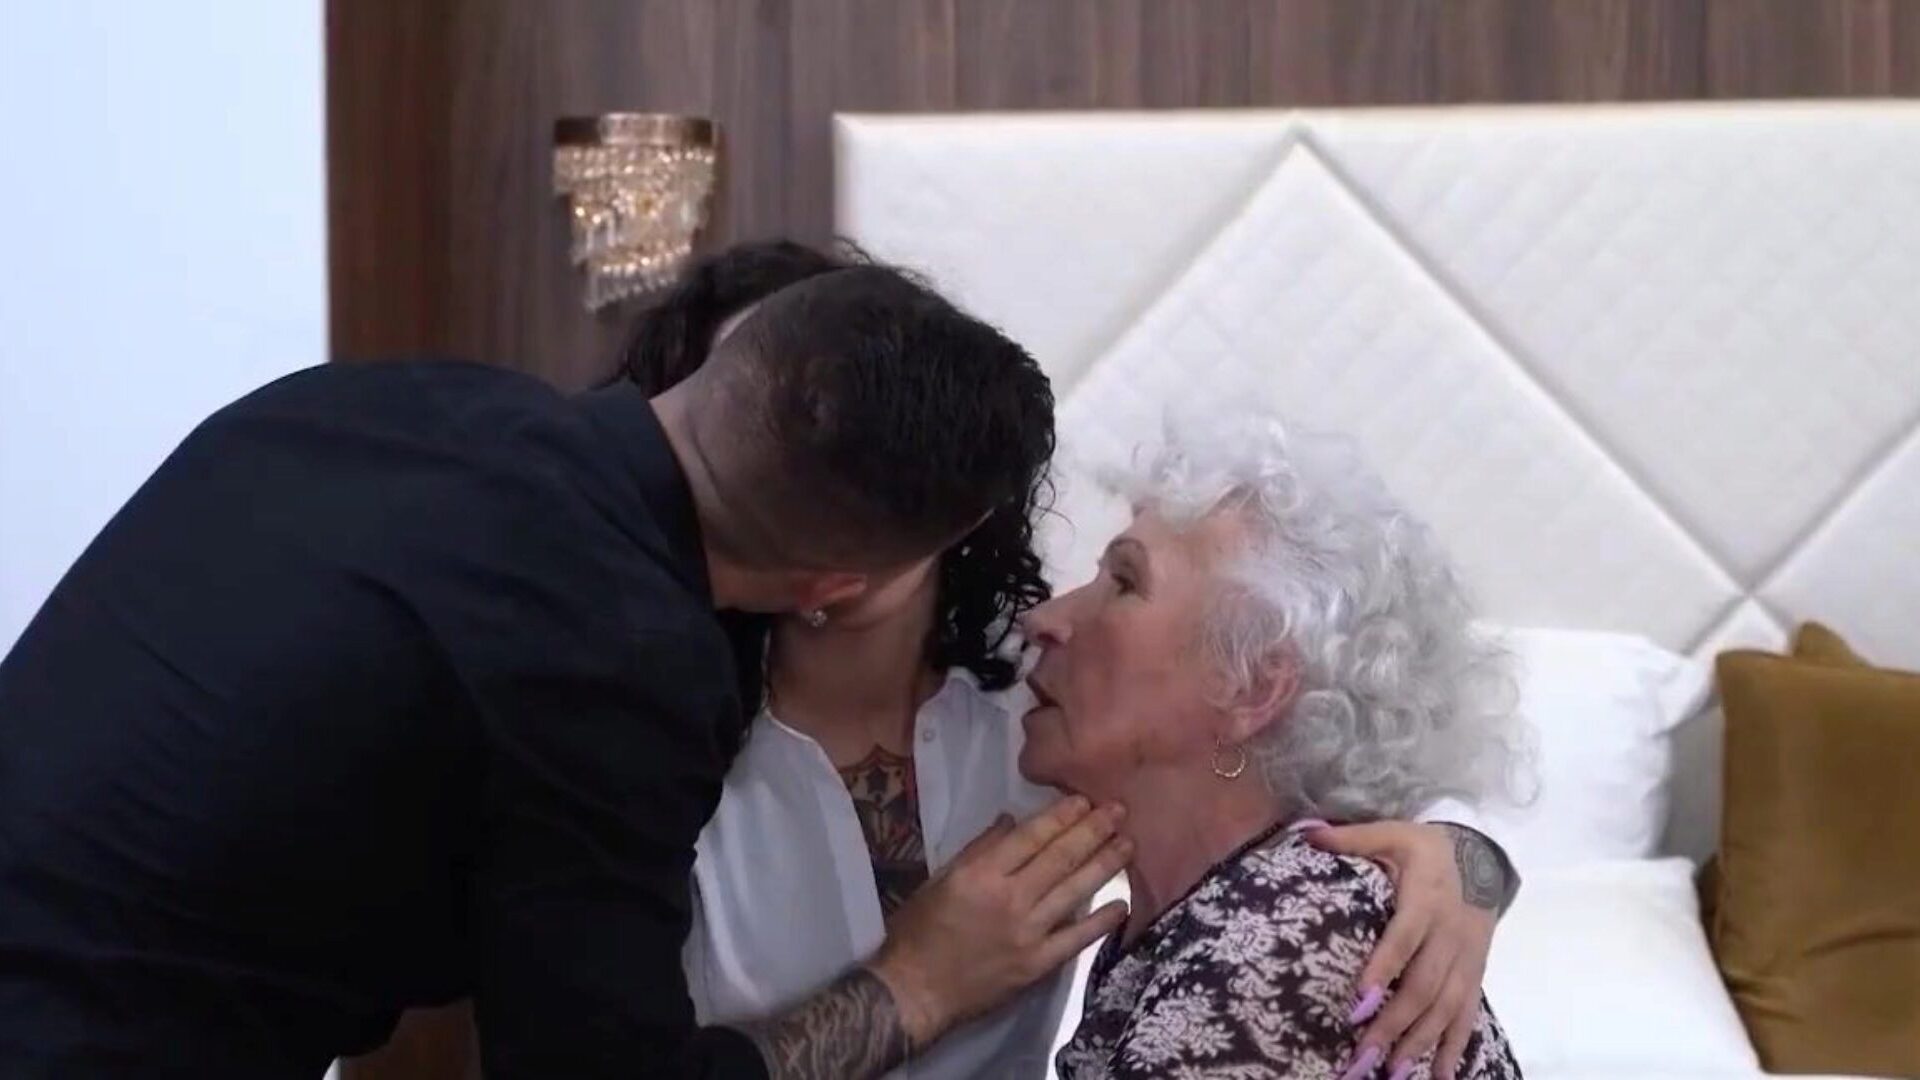 en glædelig karrusel i livet for en 86 år ældre bedstemor barnebarn bonks med sin 86 år gamle bedstemor og deler med glæde sin smukhed med hende